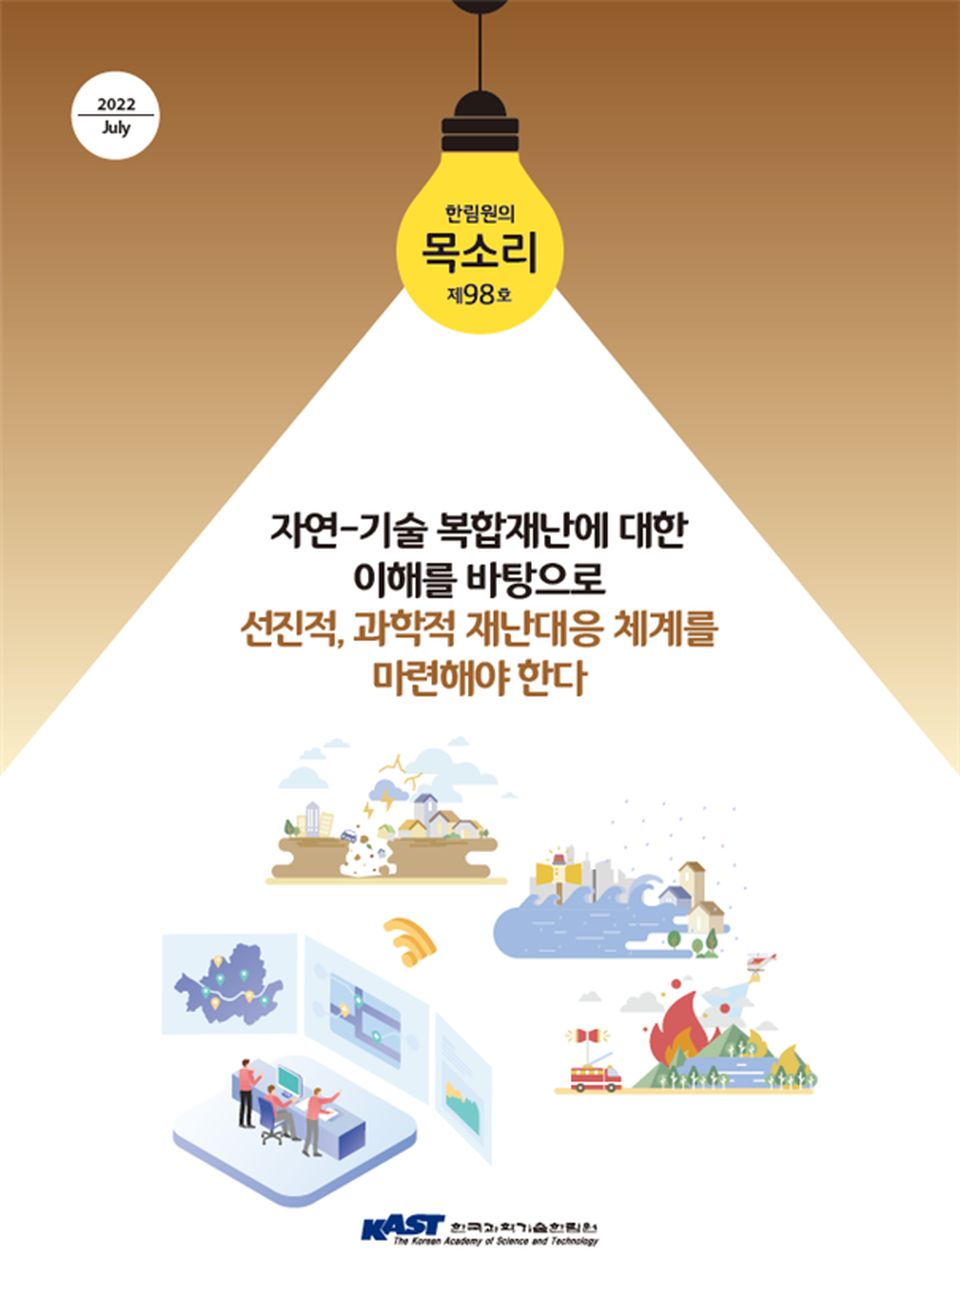 한국과학기술한림원은 ‘자연-기술 복합재난에 대한 이해를 바탕으로 선진적·과학적 재난대응 체계를 마련해야 한다’를 주제로 7월 28일 ‘한림원의 목소리 제98호’를 공표했다. 사진은 ‘한림원의 목소리 제98호’ 표지.